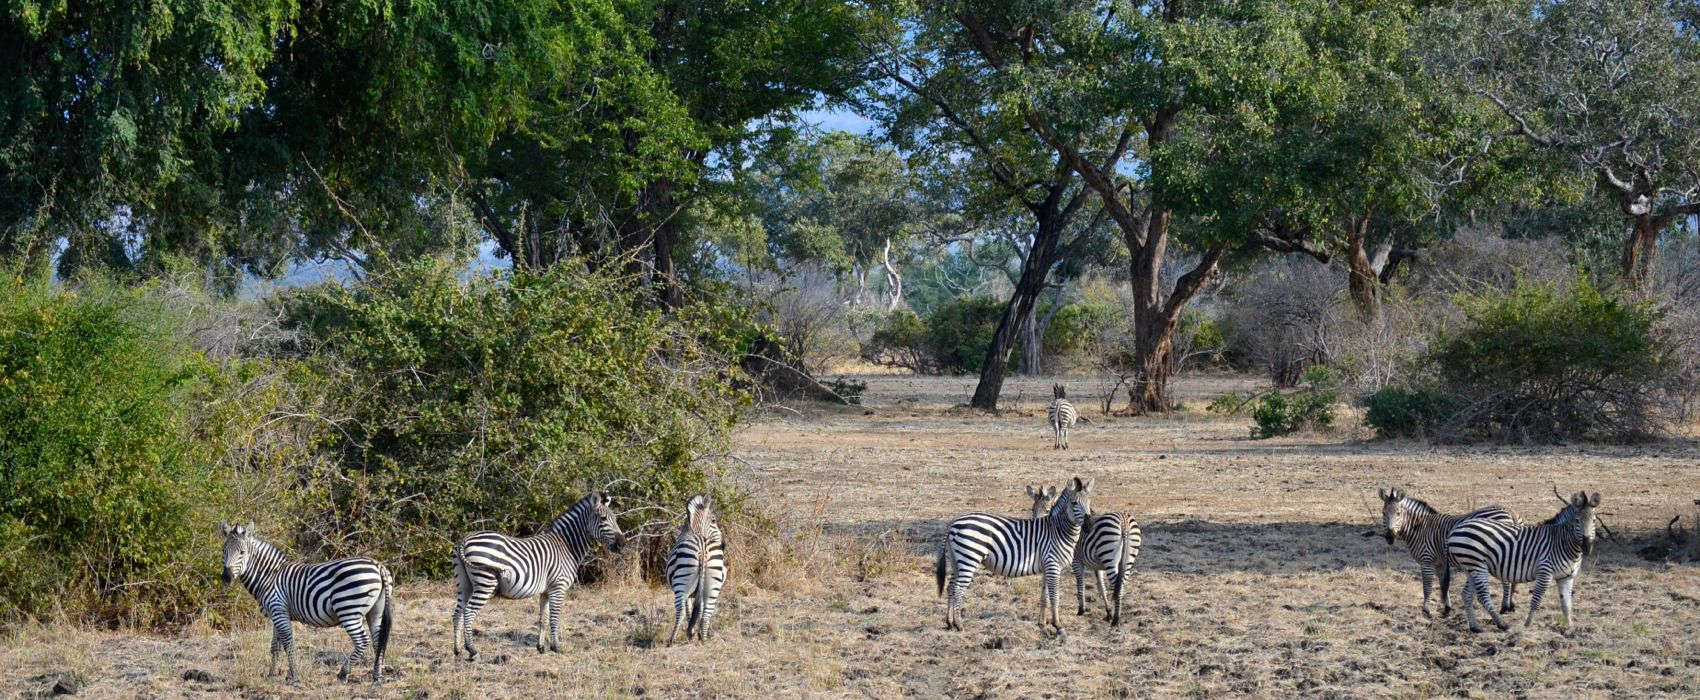 Wildlife safari Zimbabwe